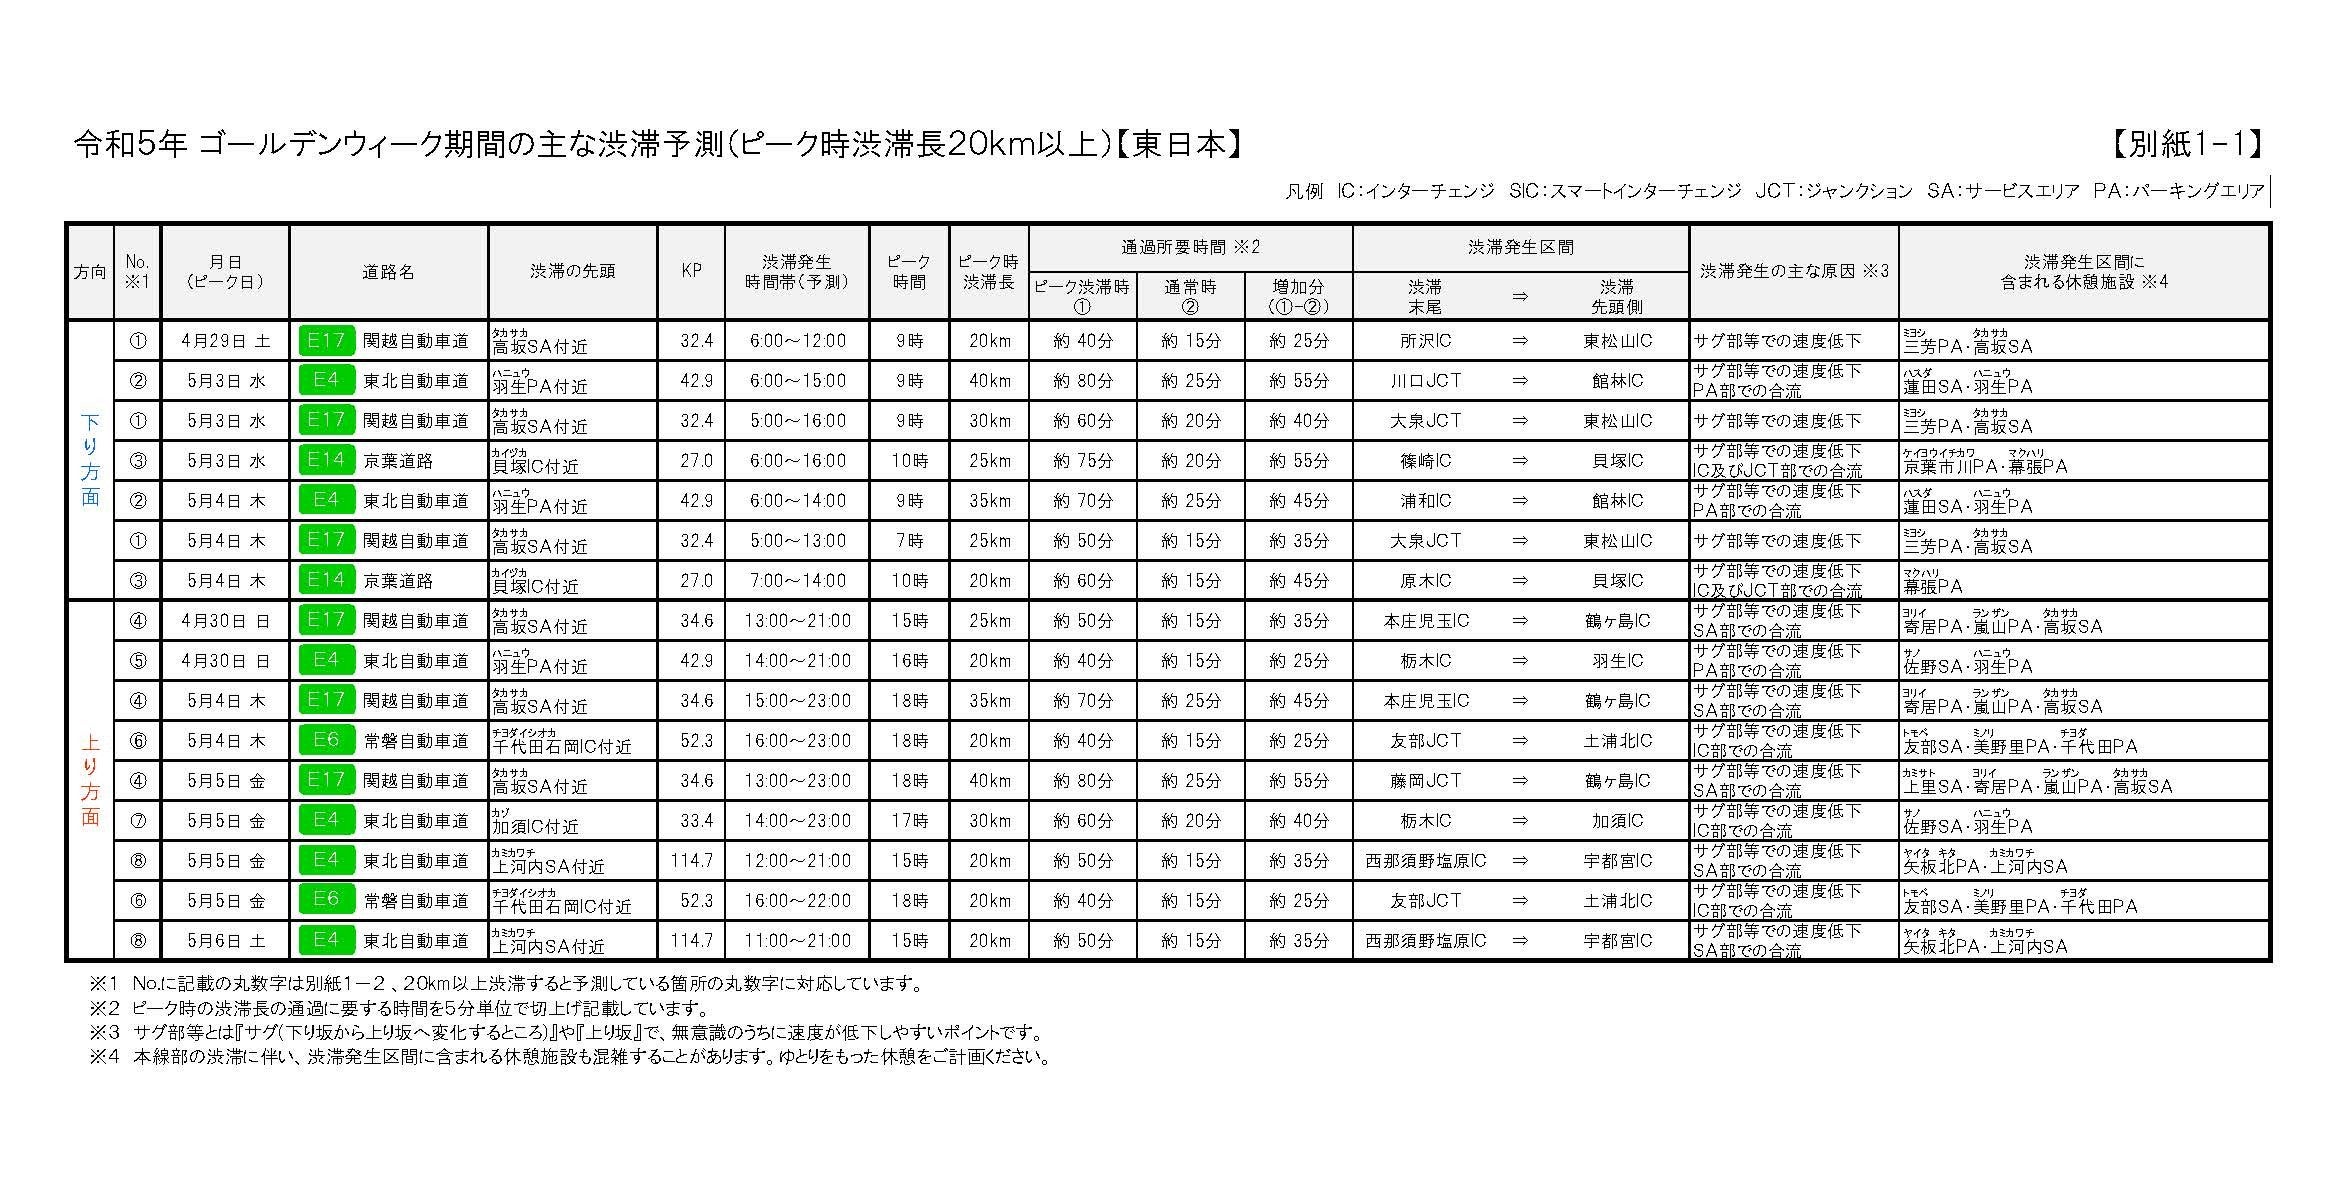 NEXCO東日本管内のGW期間中における主な渋滞予測